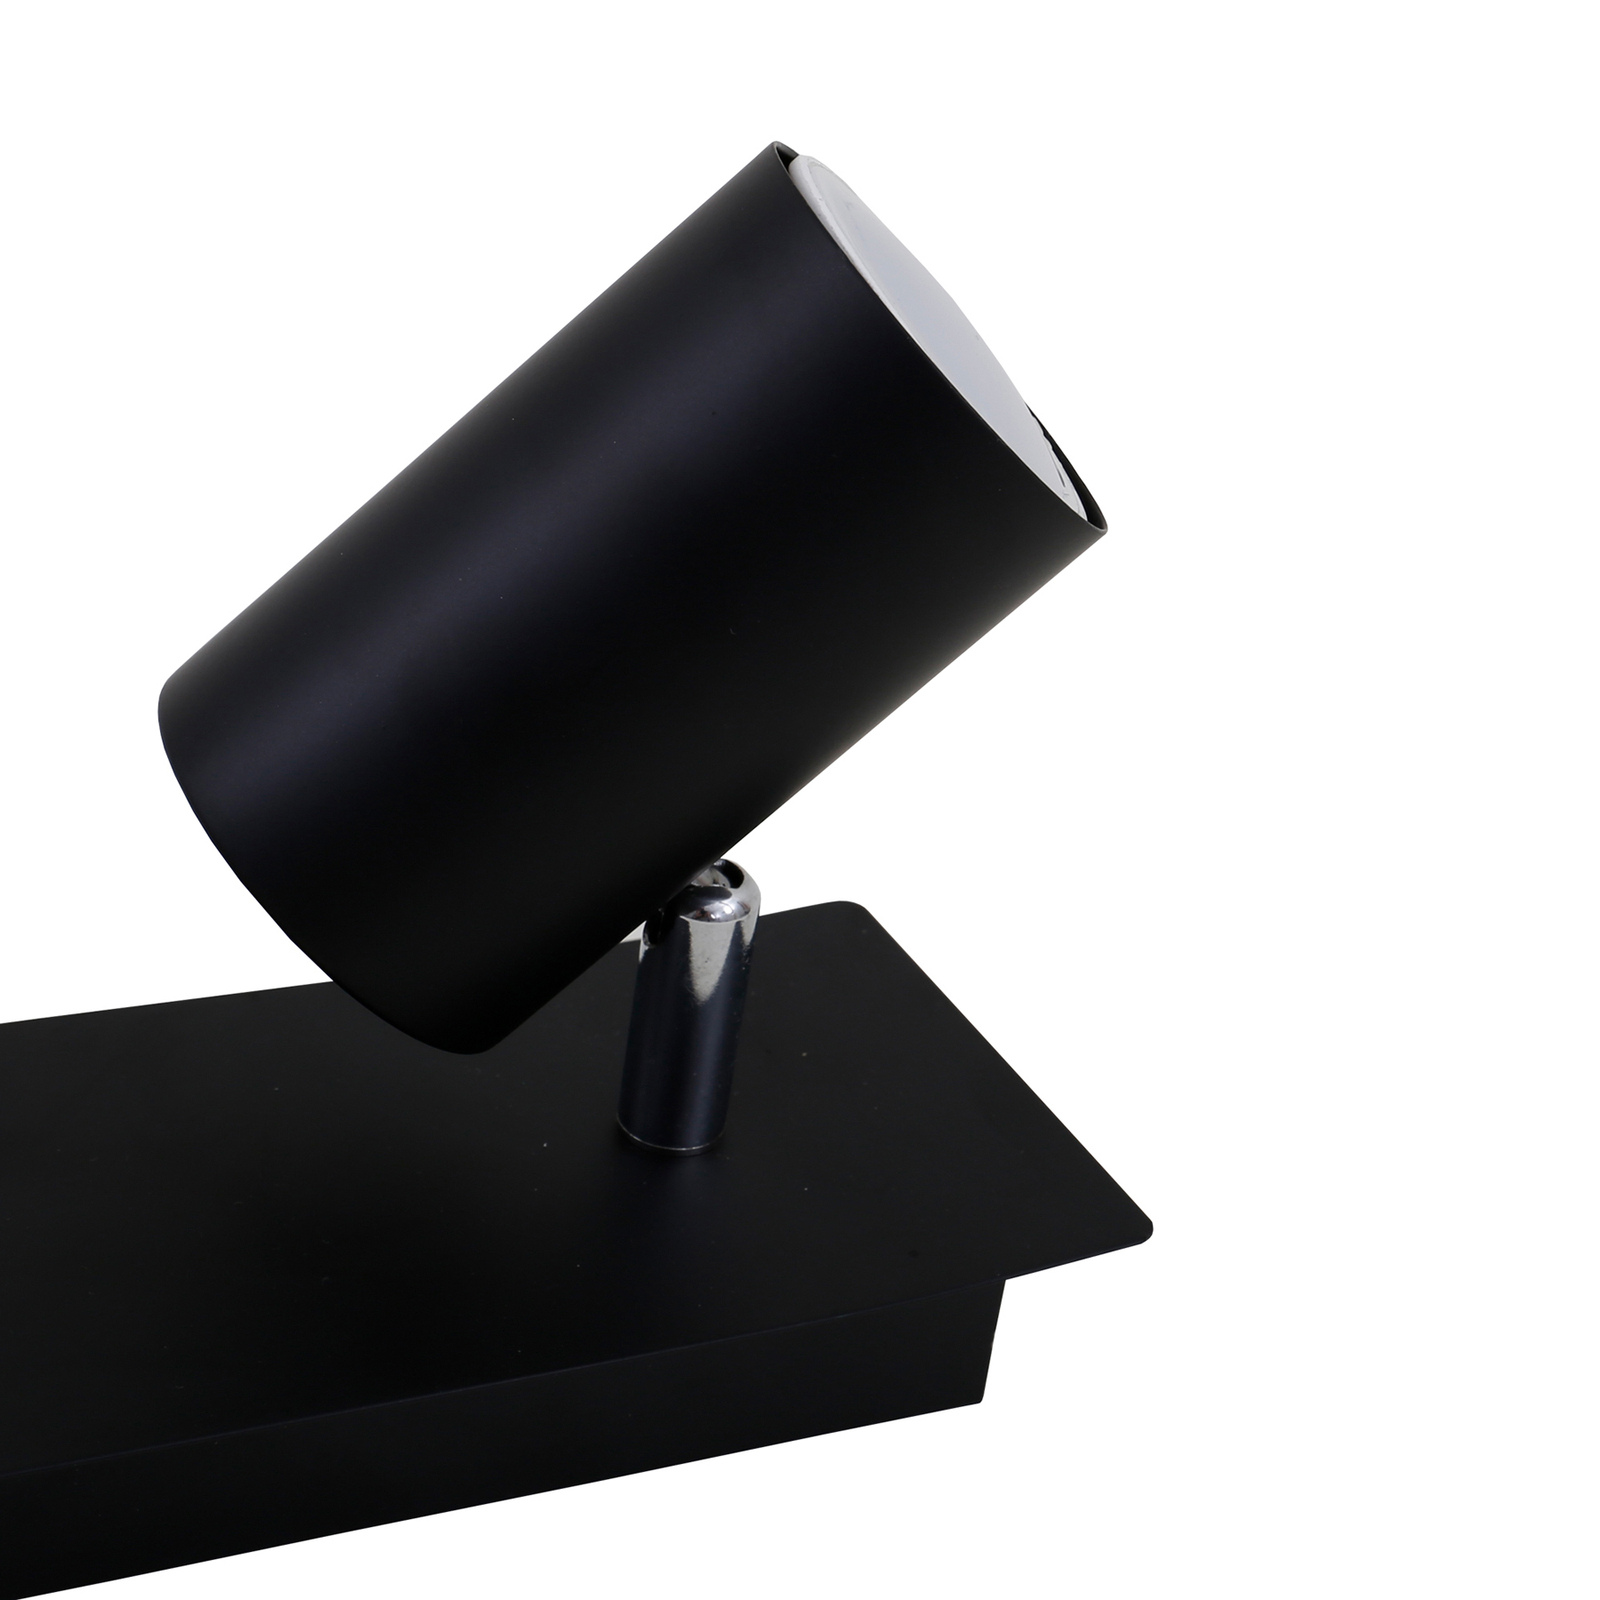 Plafonnier 2857-025, inclinable, à 2 lampes, noir